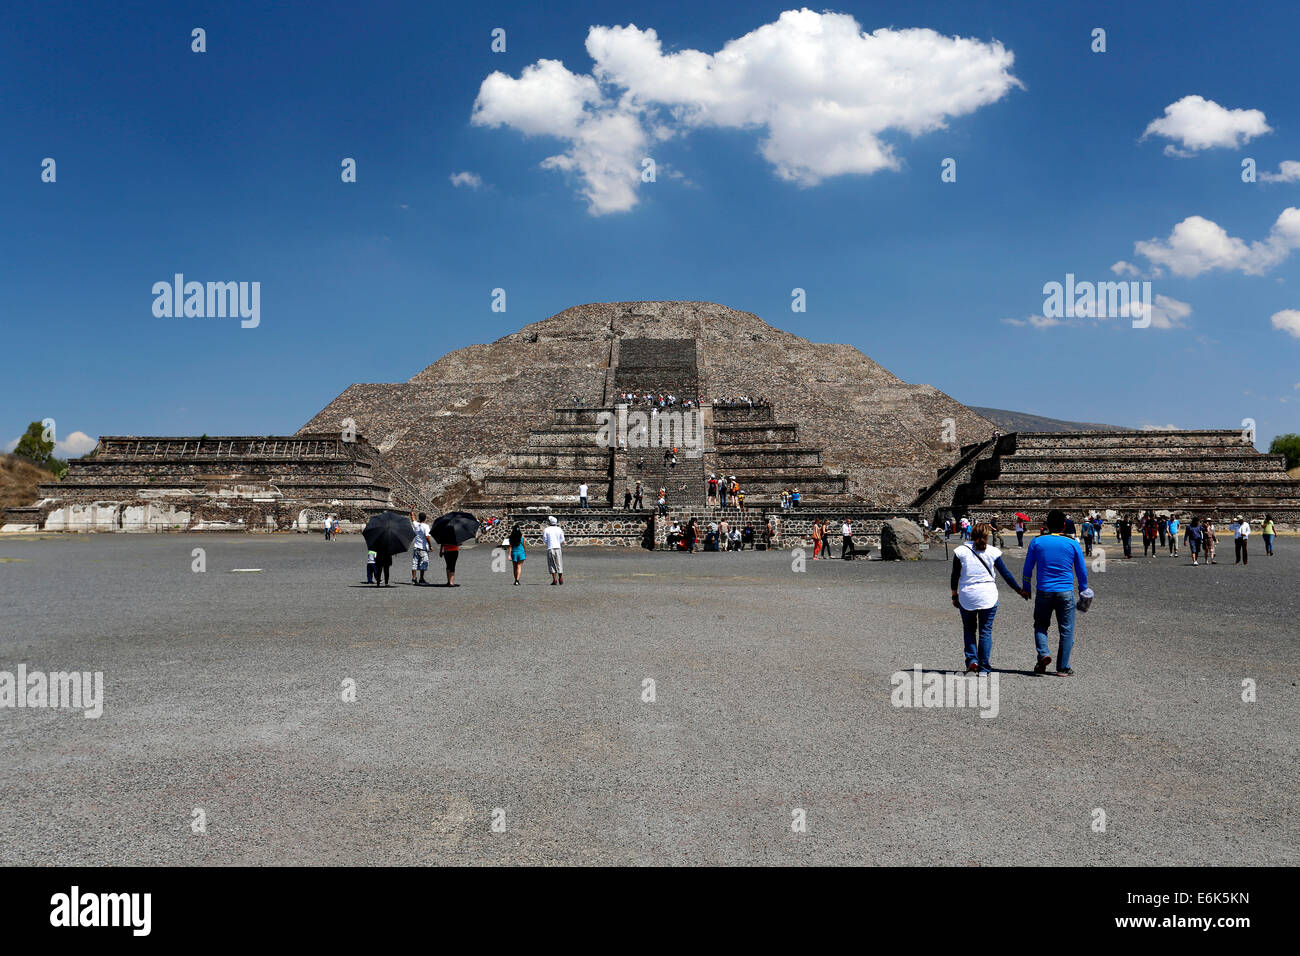 Pyramides de Teotihuacan, UNESCO World Heritage Site, État de Mexico, Mexique Banque D'Images